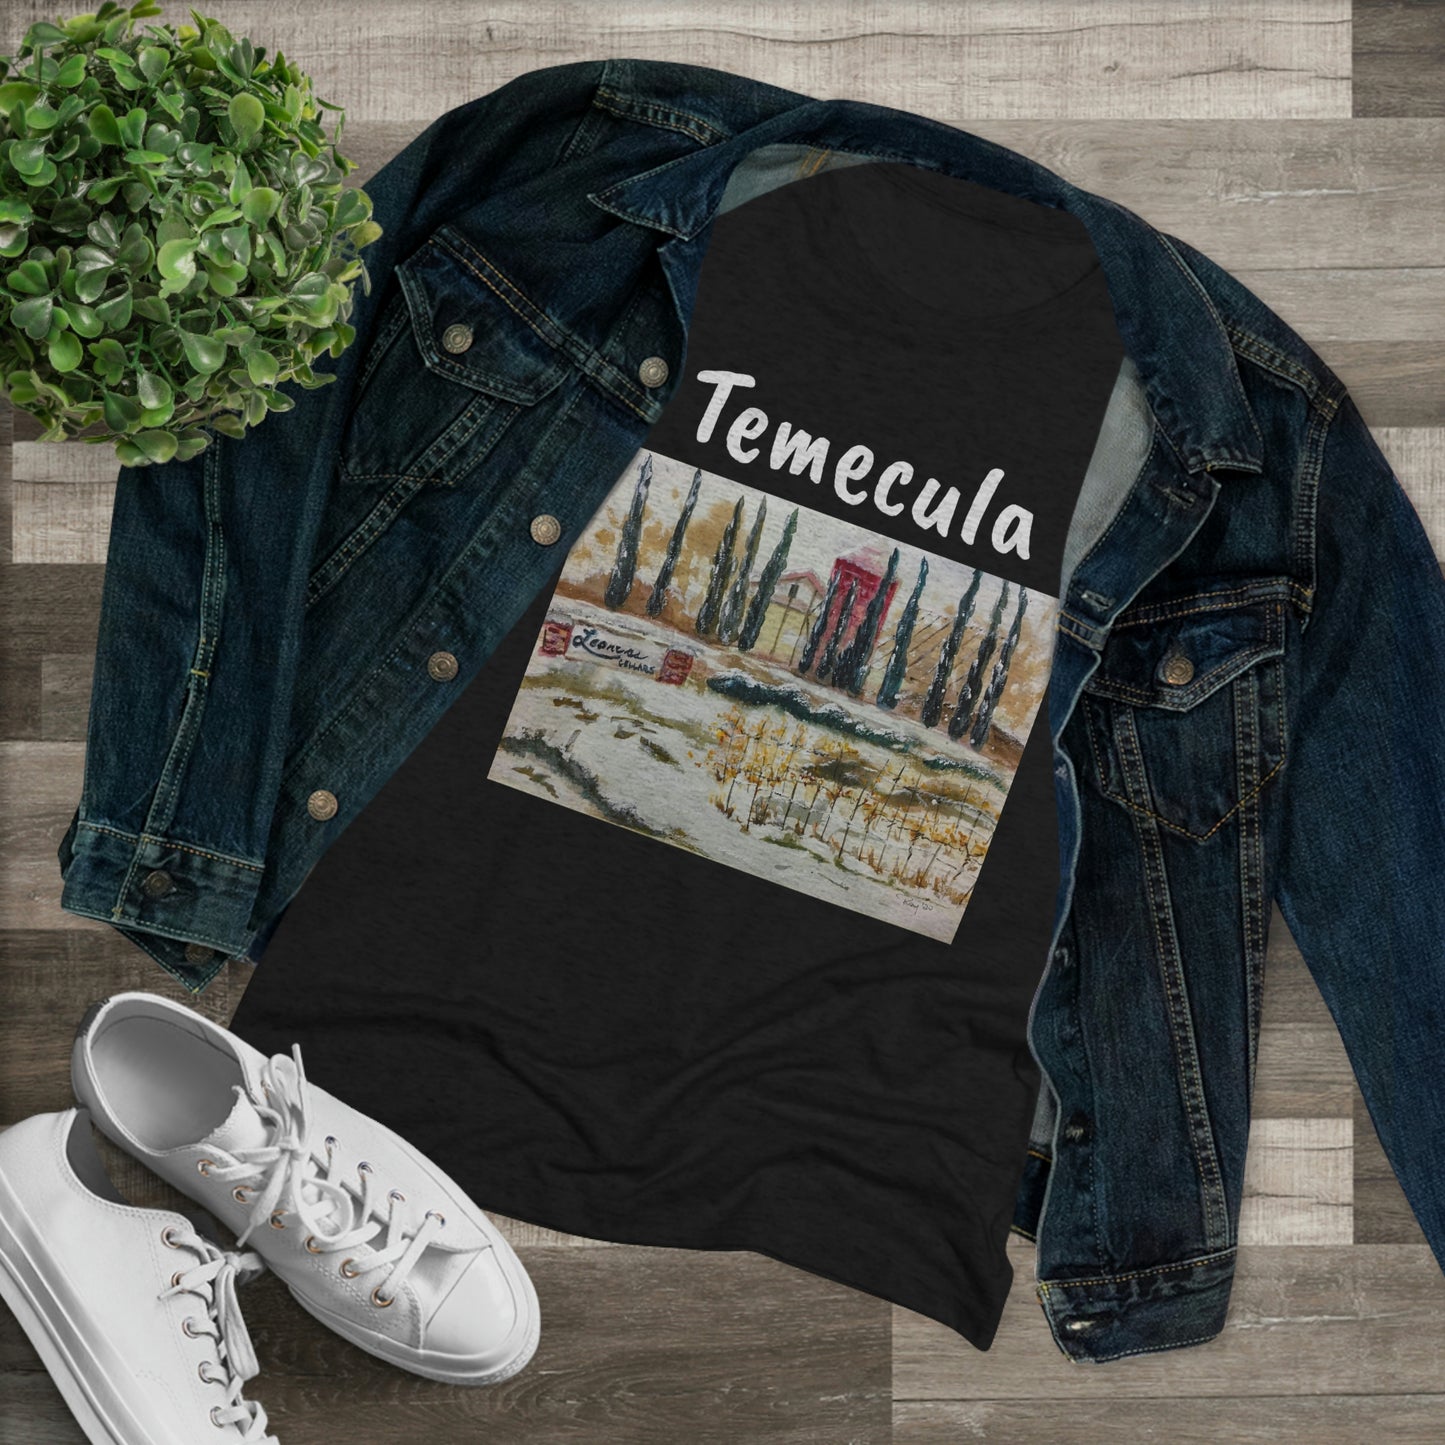 Leoness Cellars (ce jour-là il a neigé) Temecula Tee-shirt Triblend ajusté pour femmes